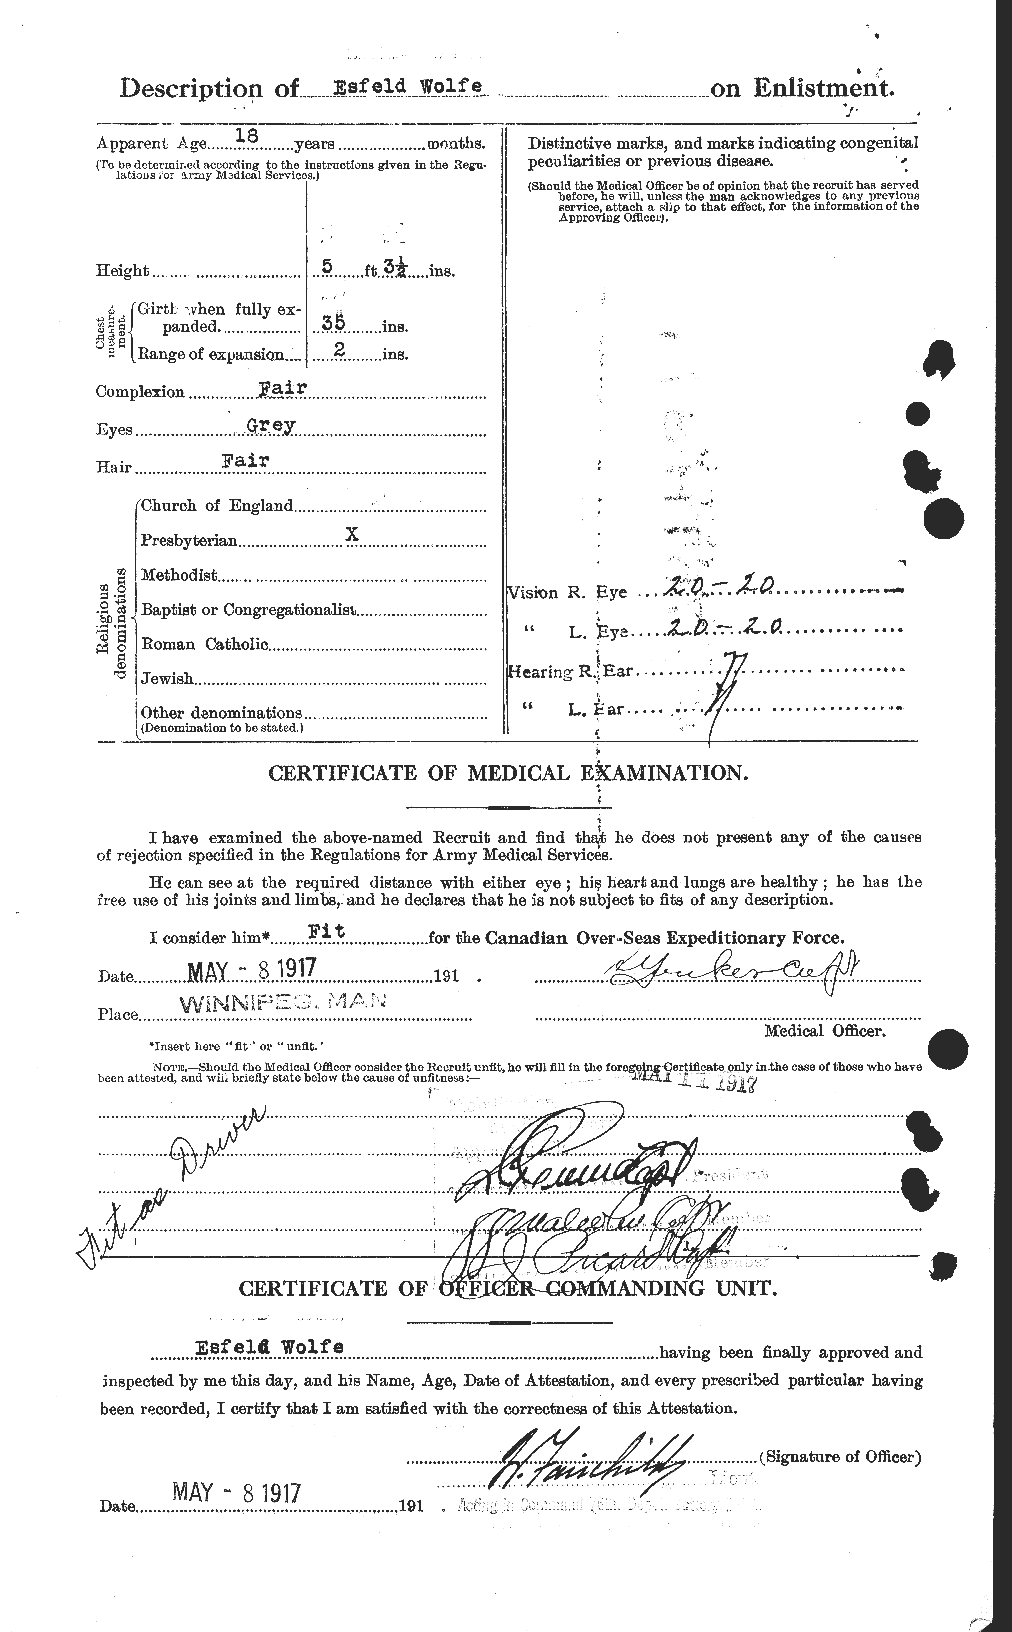 Dossiers du Personnel de la Première Guerre mondiale - CEC 682329b